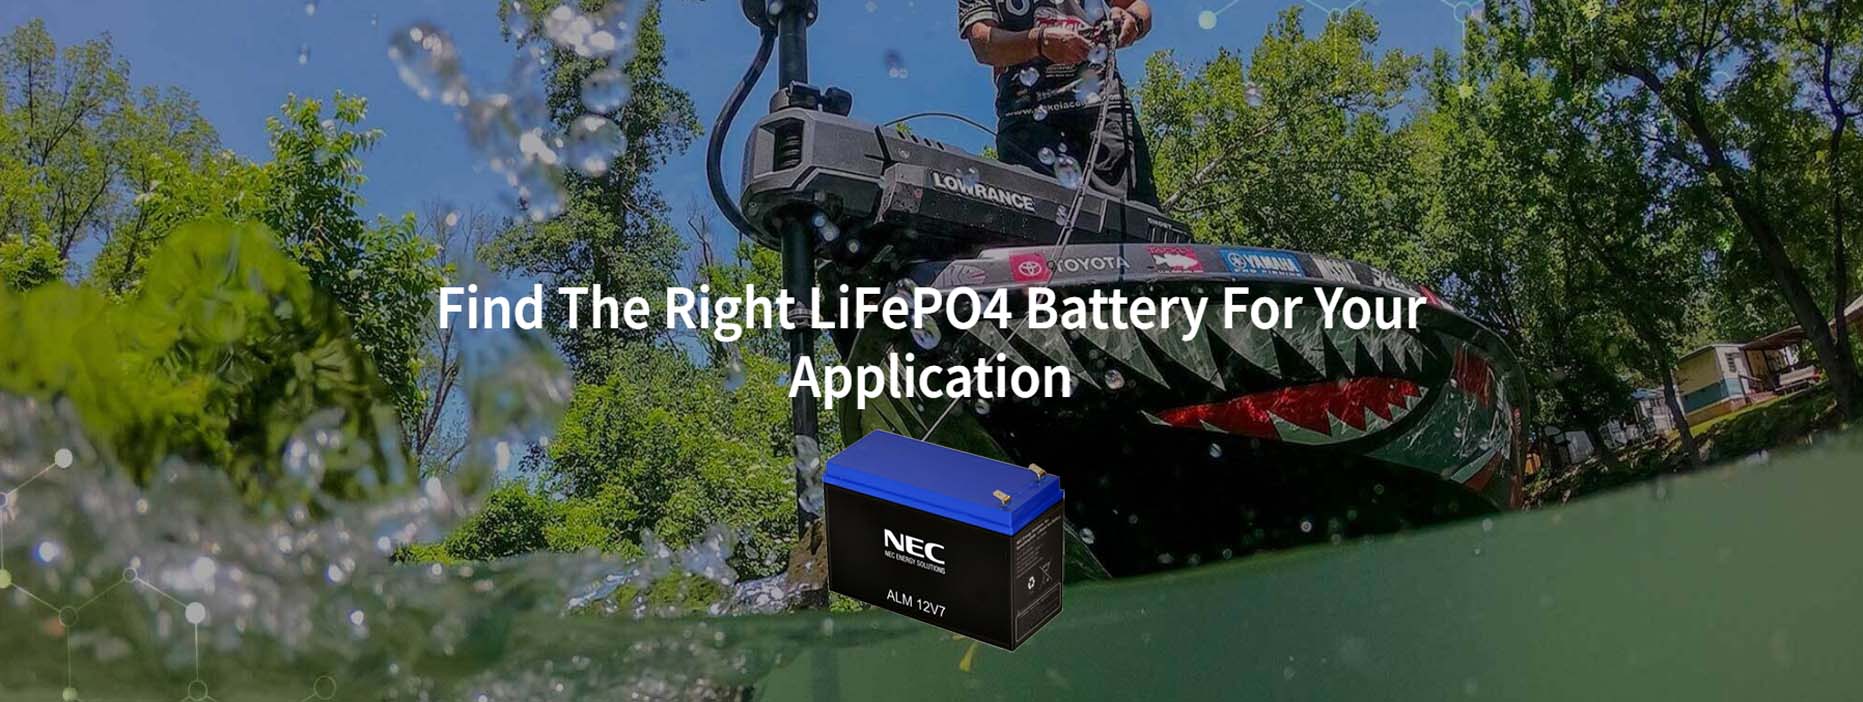 NEC电池产品图片2